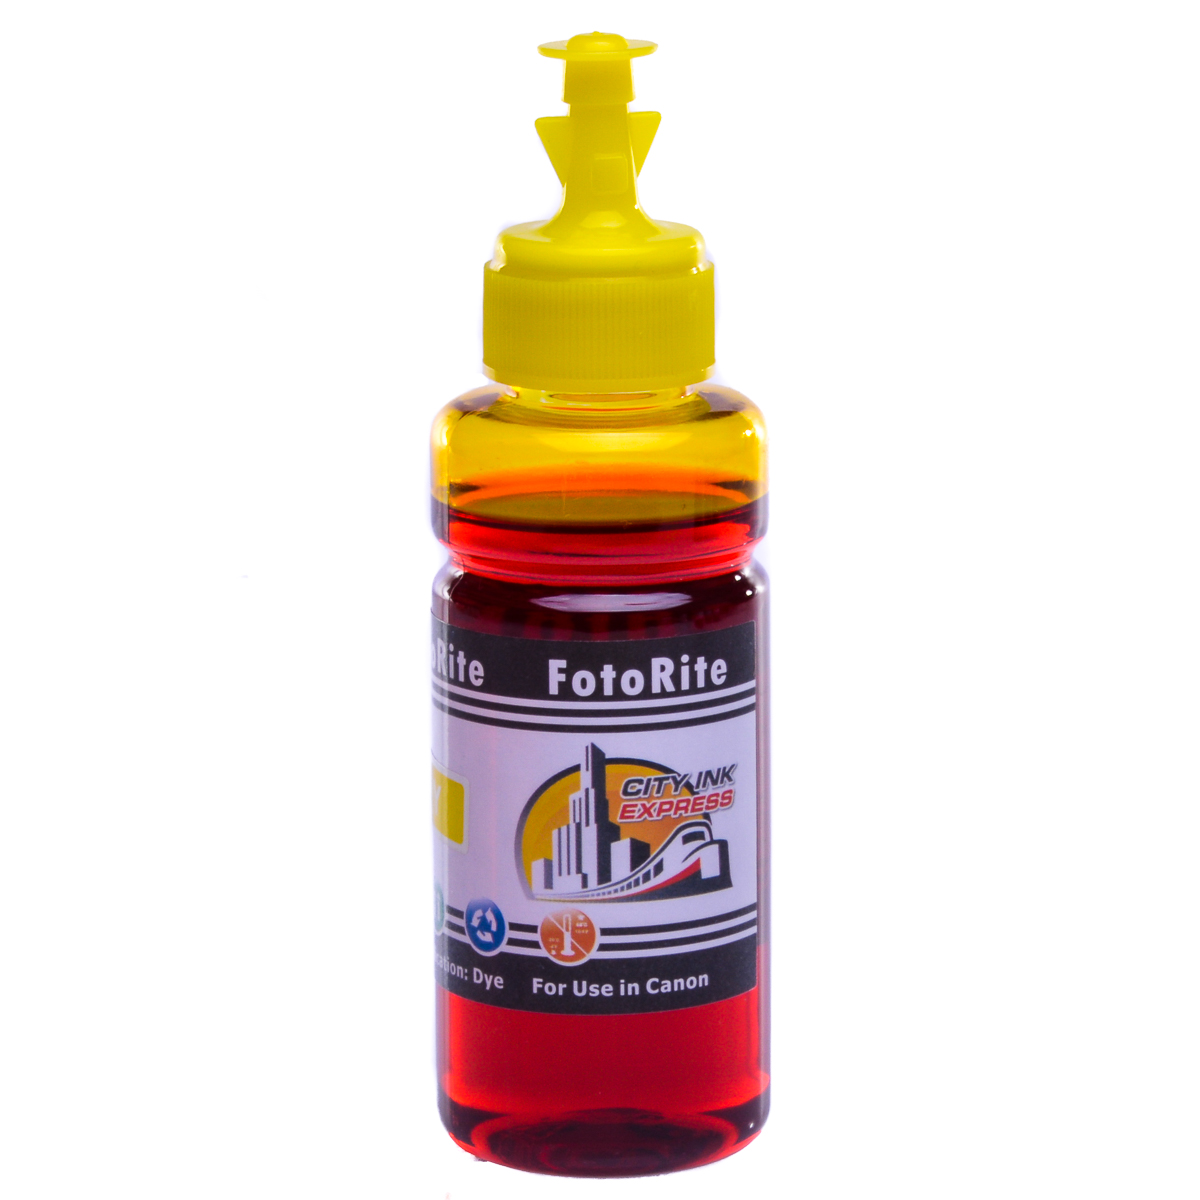 Cheap Yellow dye ink replaces Canon Pixma IX6550 - CLI-526Y